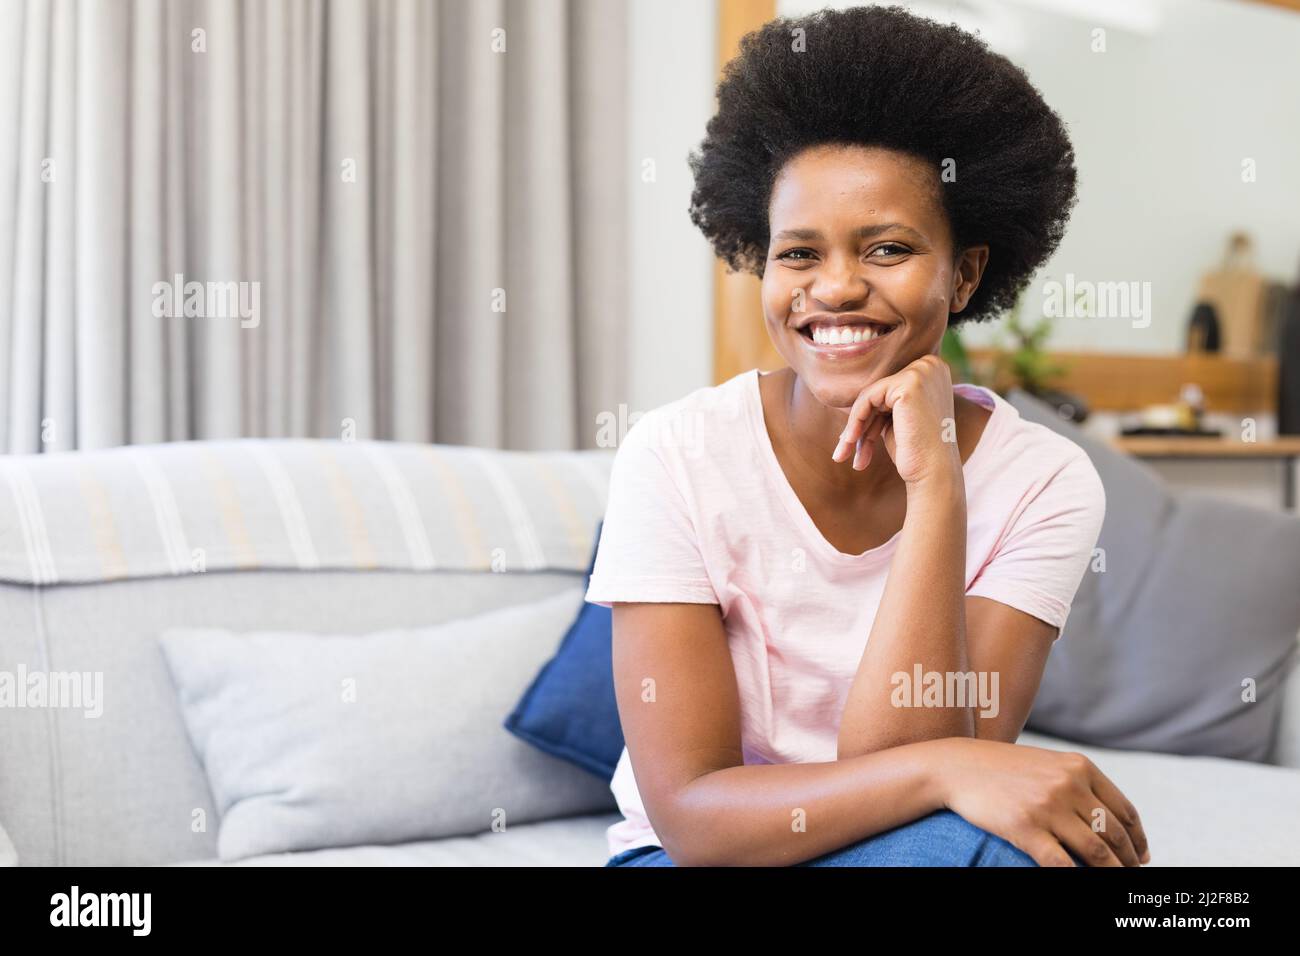 Retrato de una sonriente mujer afroamericana de mediana edad sentada en el sofá con la mano en la barbilla en casa Foto de stock